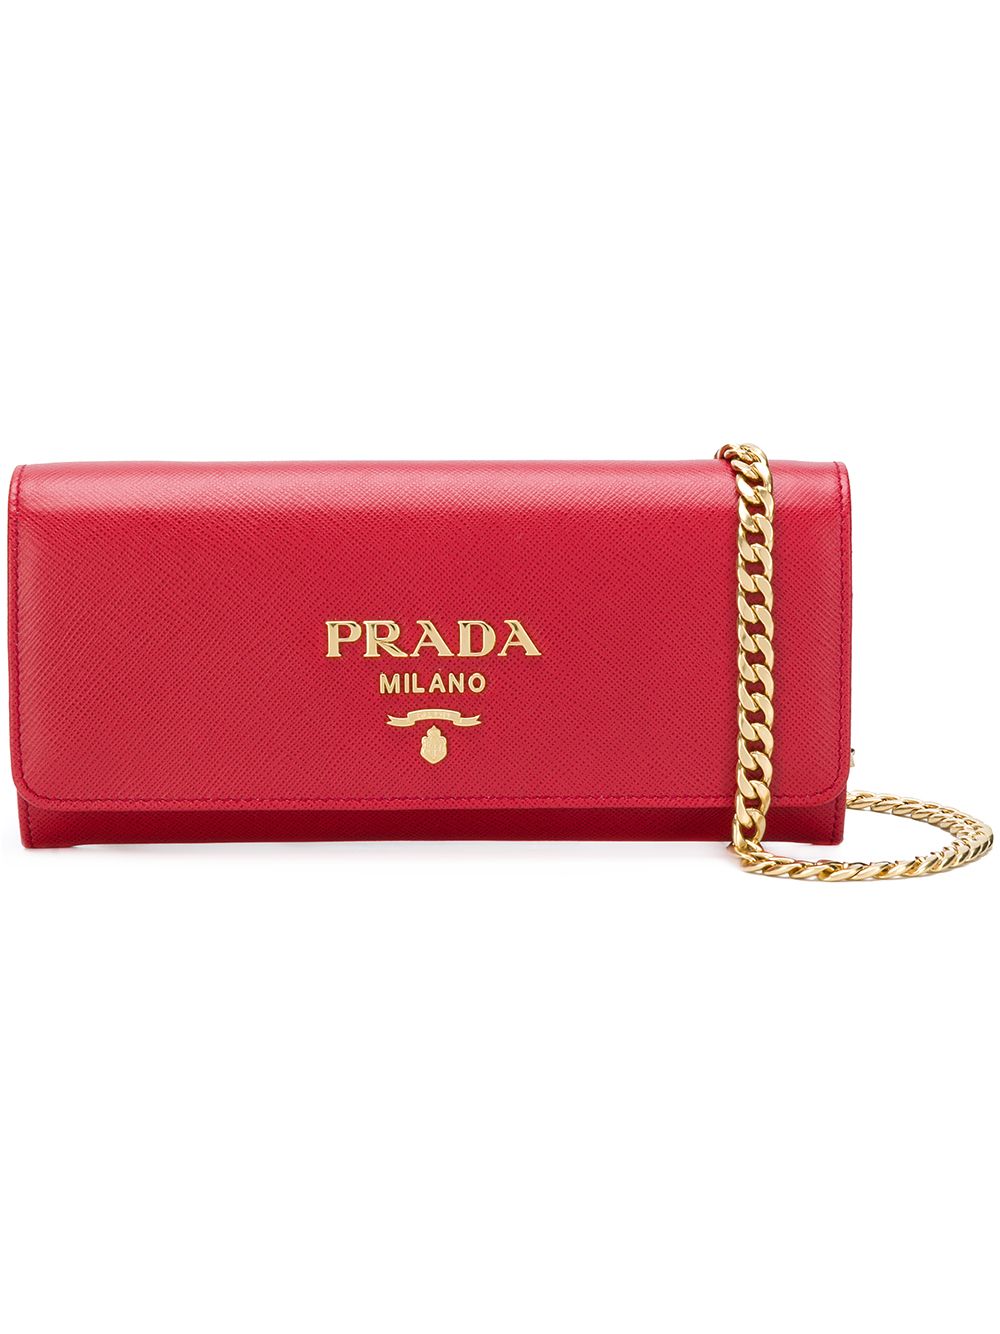 фото Prada маленькая сумка-кошелек